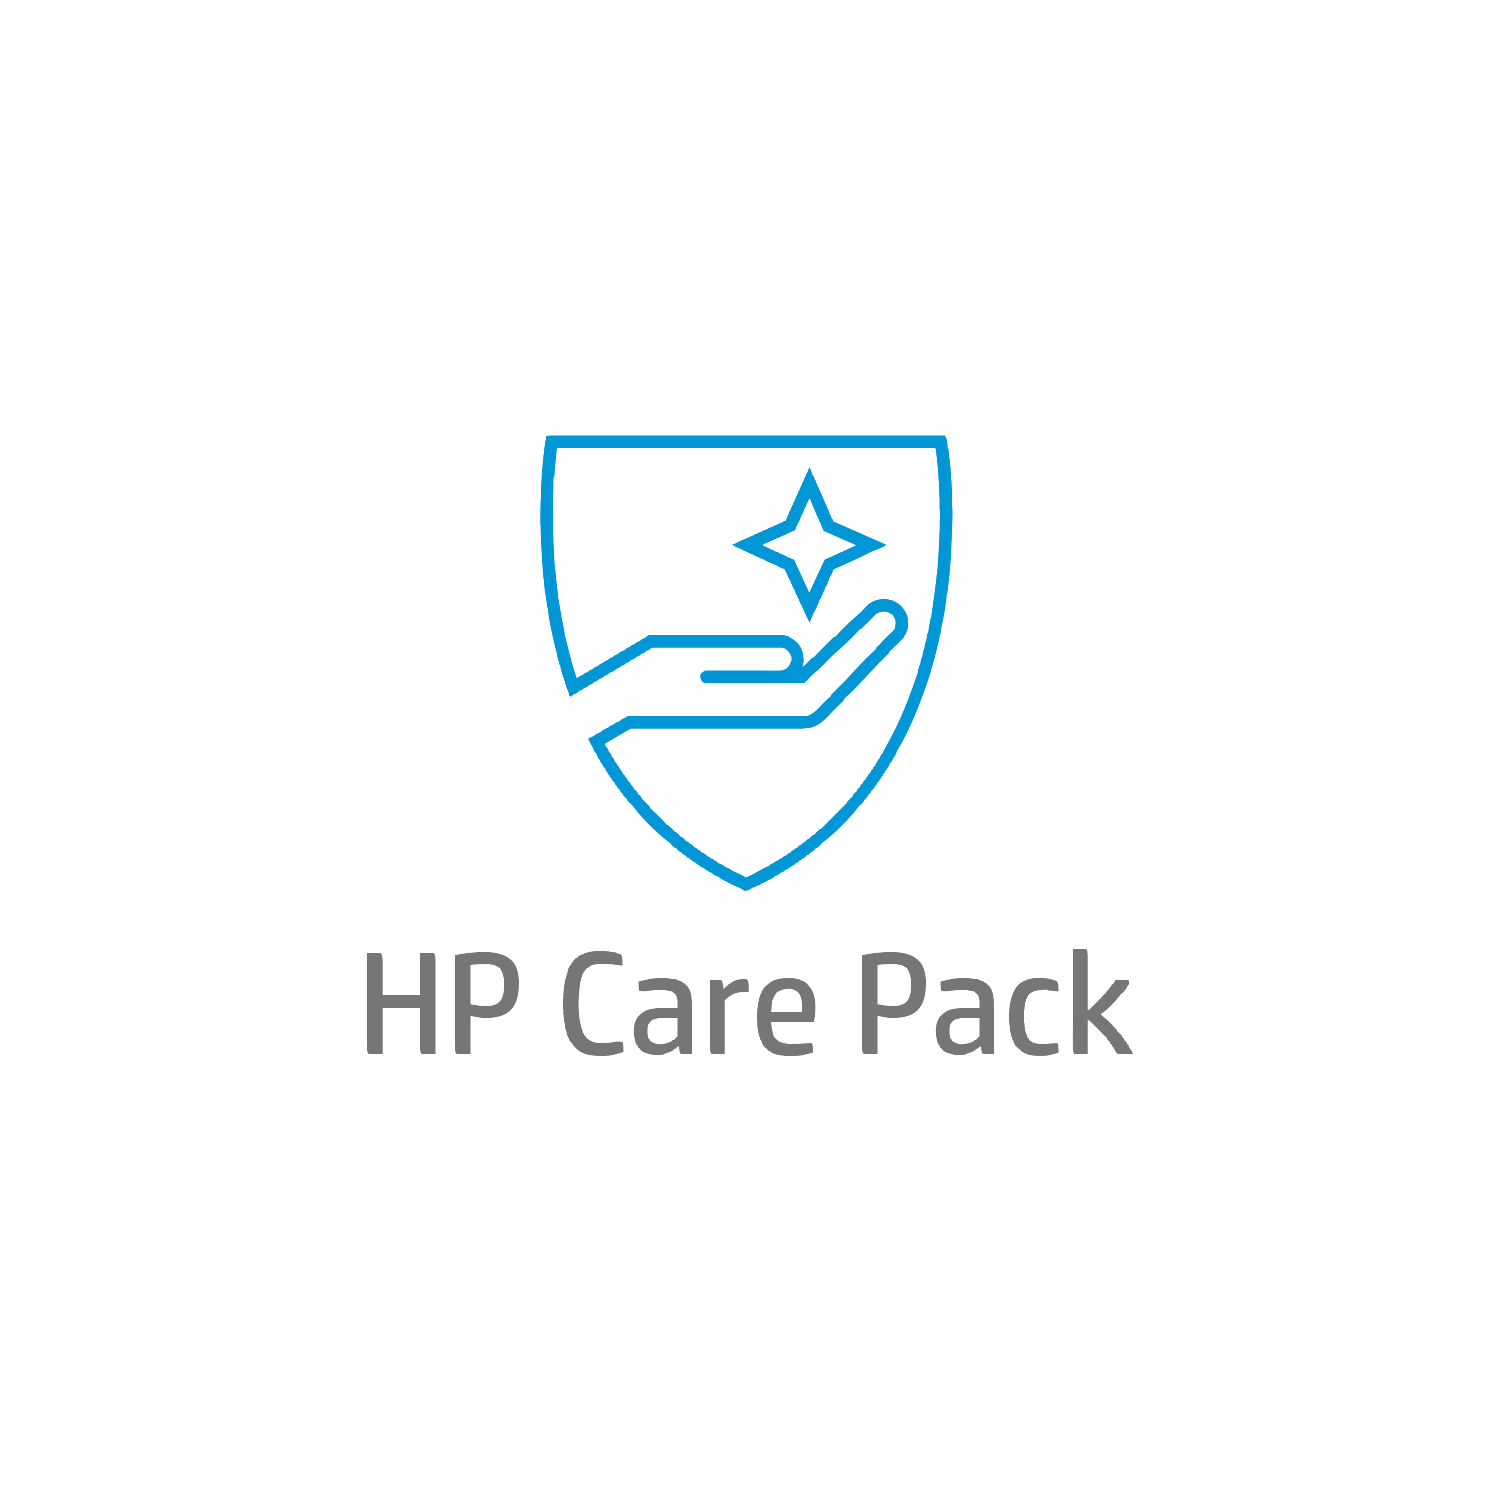 Bild von HP HPActive Care Lösungs-Support vor Ort mit Reaktion bis zum nächsten Werktag für Notebooks - 3 Jahre - Active Care - Remote und vor Ort - Unter Garantie - Standardarbeitstage - 9 Stunden - 3 Jahre - Reaktion am nächsten Arbeitstag